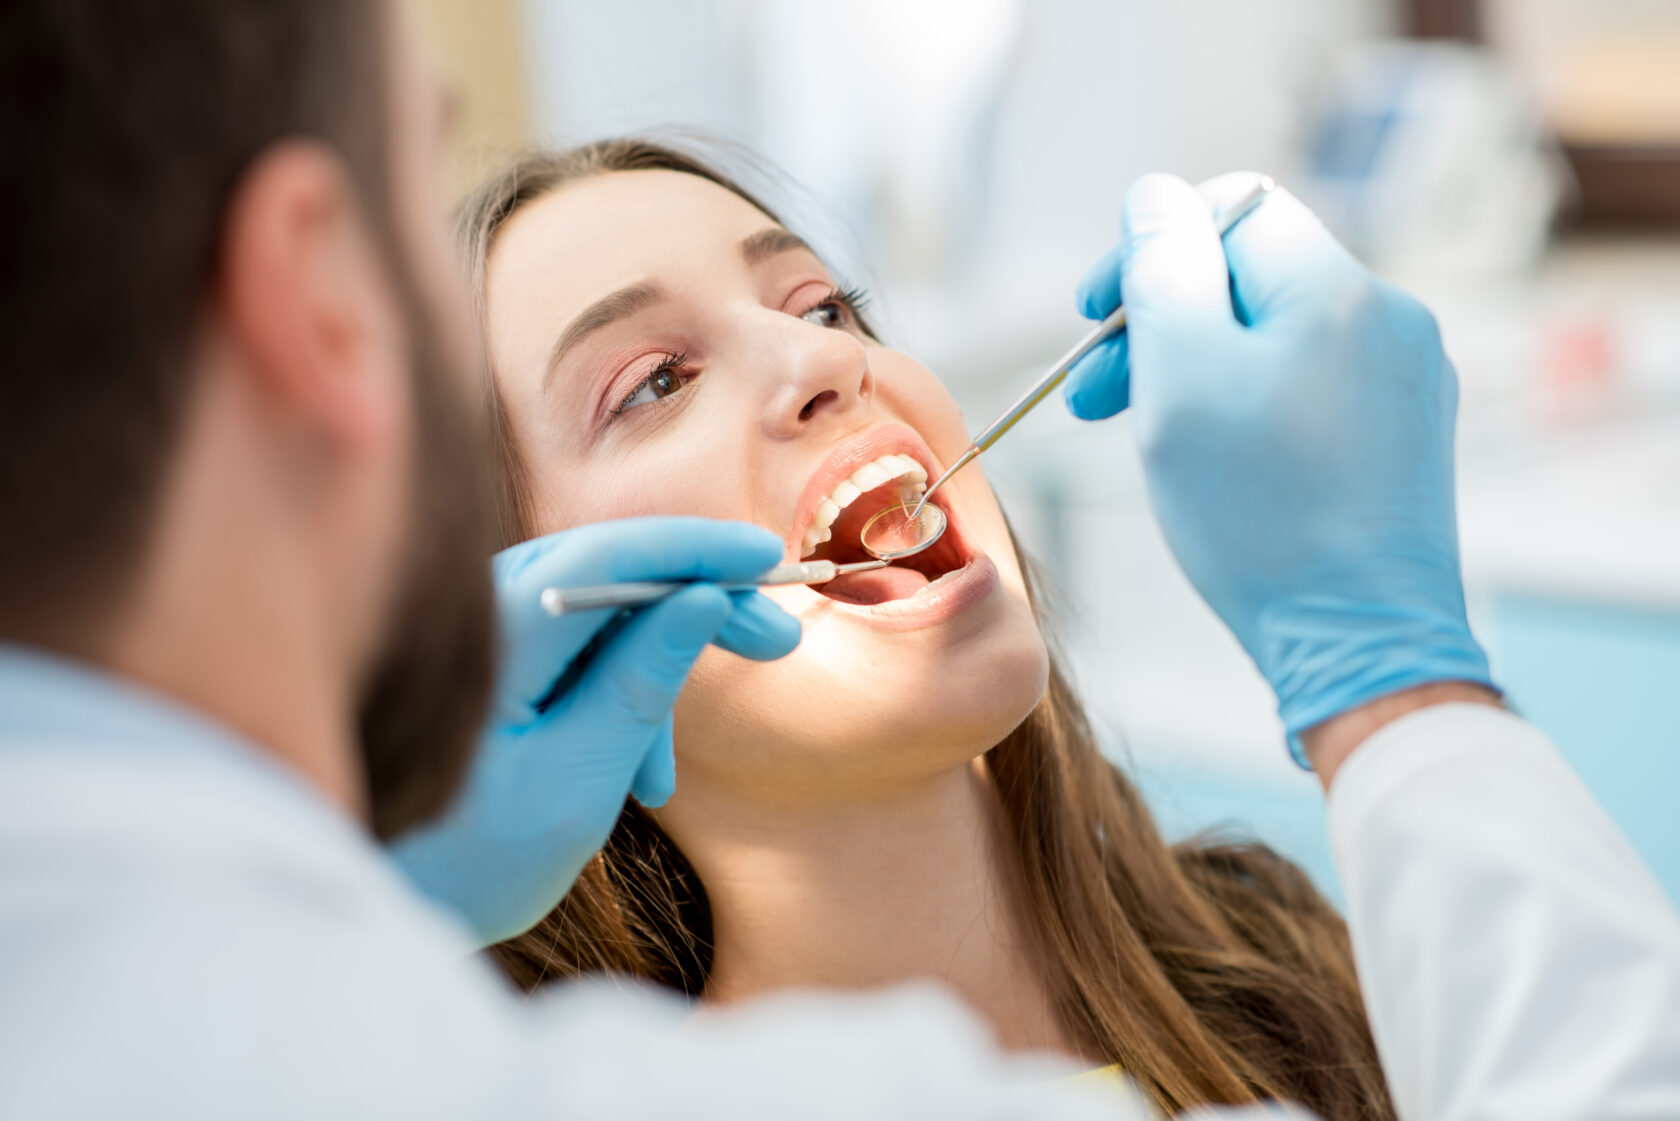 Dentistes : pourquoi externaliser avec un secrétariat à distance ?